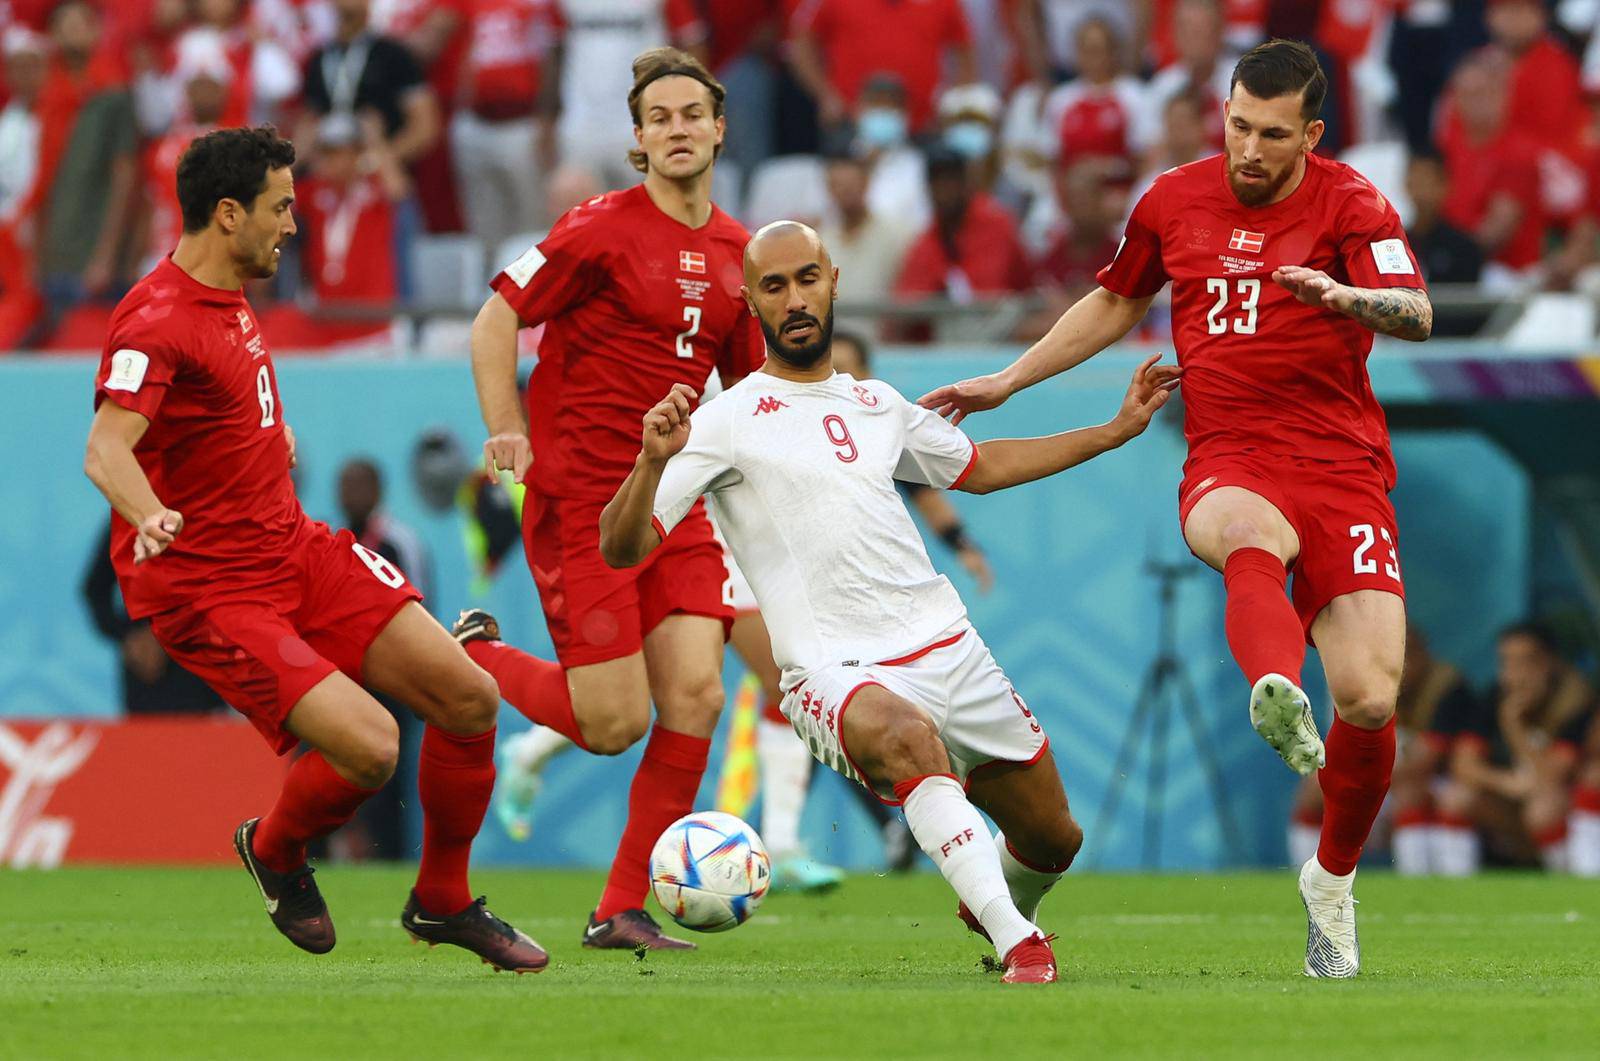 FIFA World Cup Qatar 2022 - Group D - Denmark v Tunisia